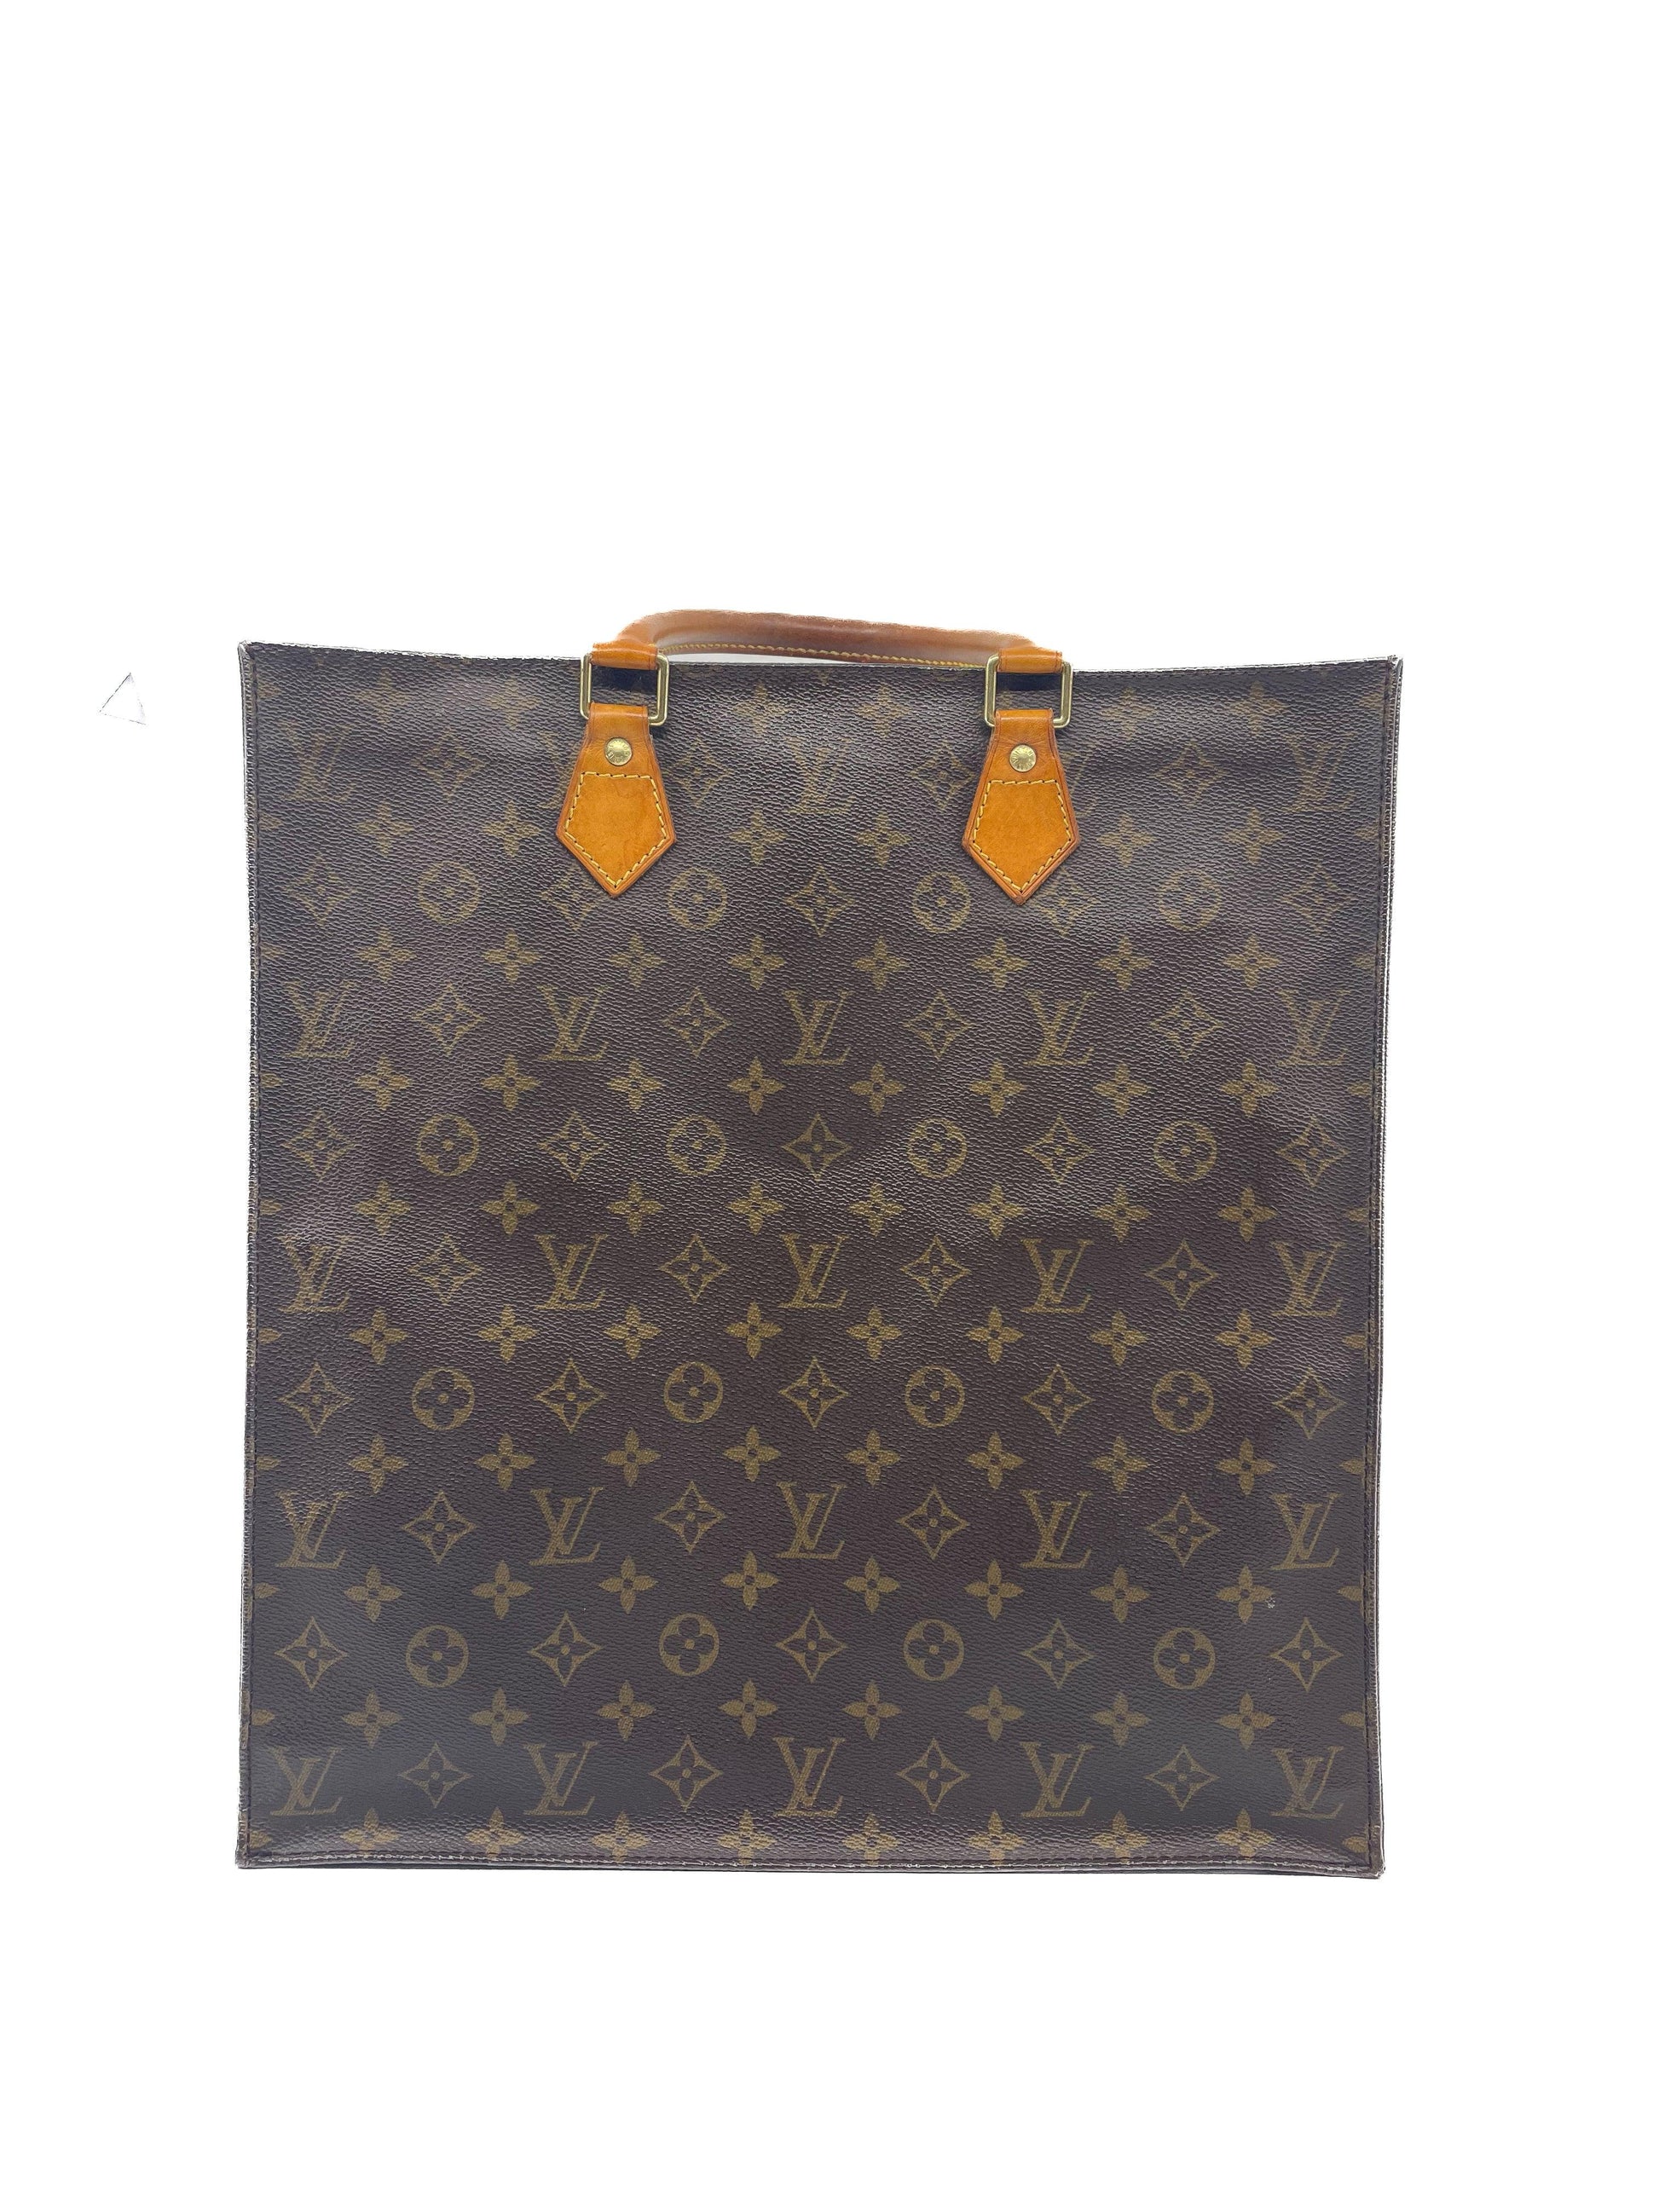 Louis Vuitton, Bags, Louis Vuitton Monogram Vintage Book Bag Slim Sac  Plat Tote Handbag Laptop Work